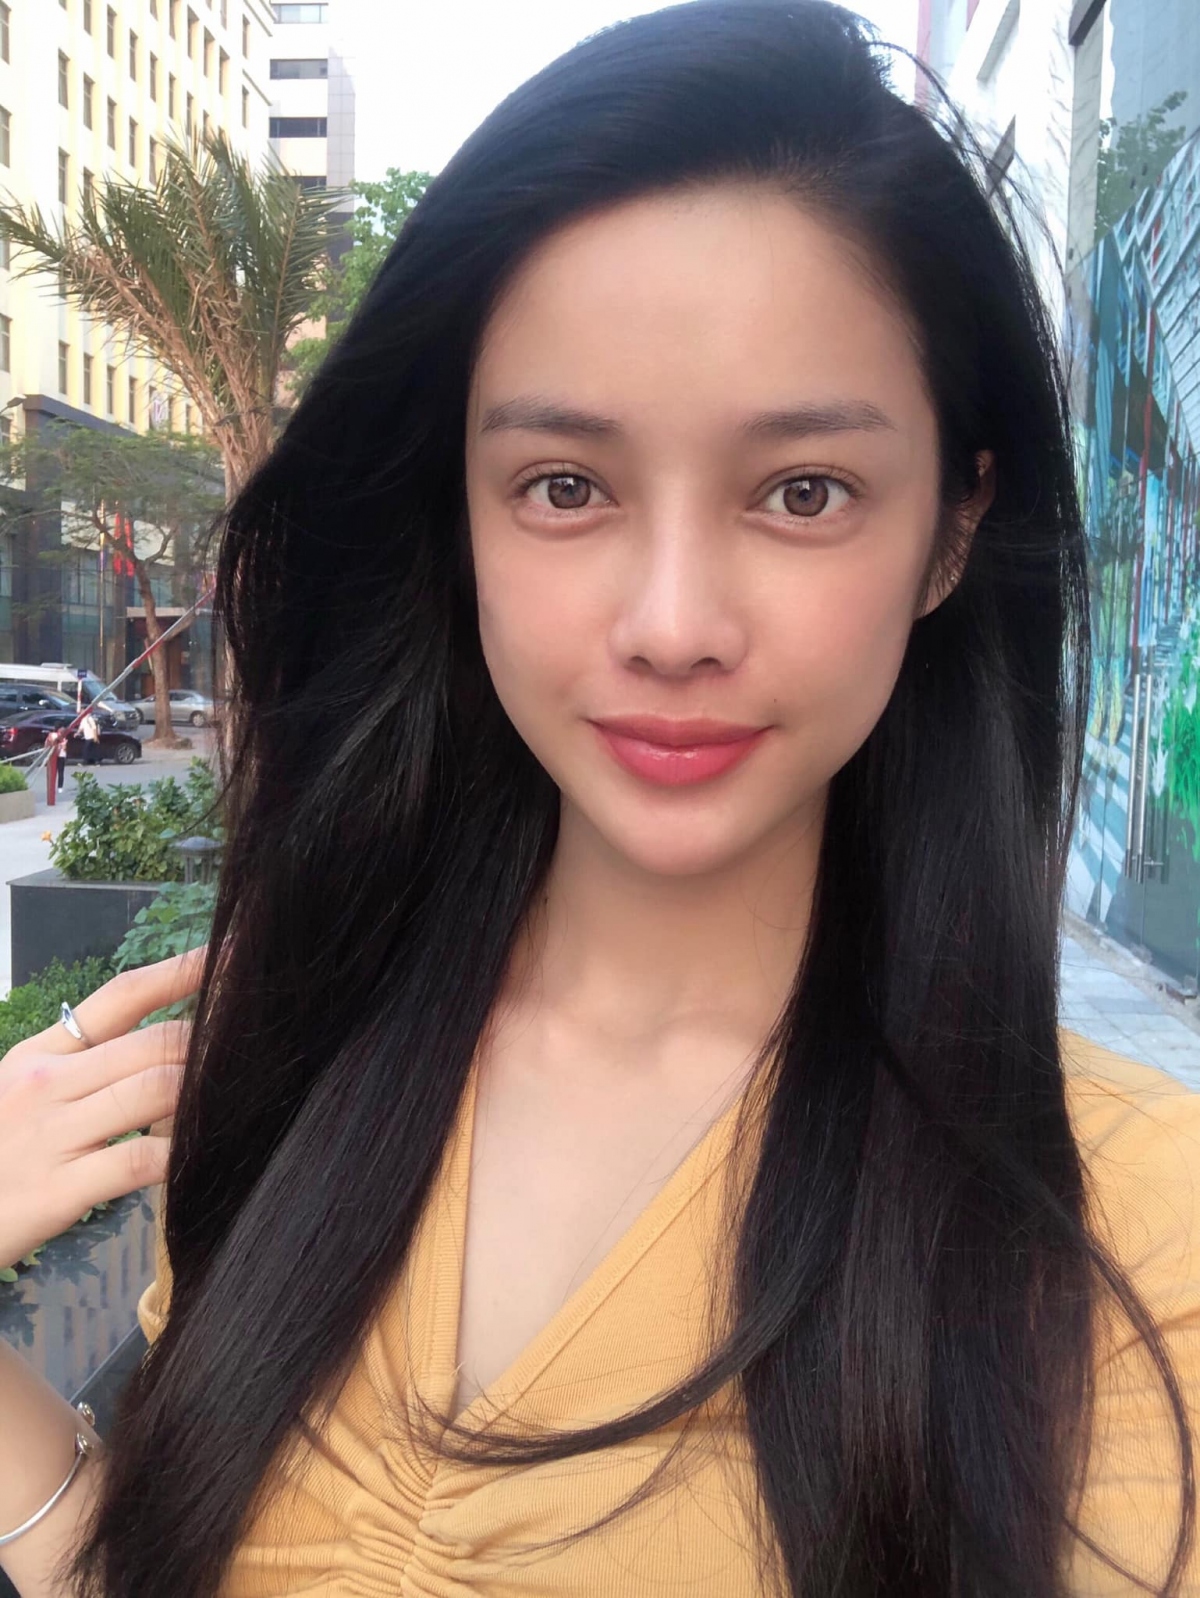 Mỹ Duyên gây ấn tượng khi tham gia The Face 2017 và tiếp tục tạo dấu ấn với khán giả bằng danh hiệu Người đẹp Áo Dài trong cuộc thi Hoa hậu Hoàn vũ Việt Nam 2017.